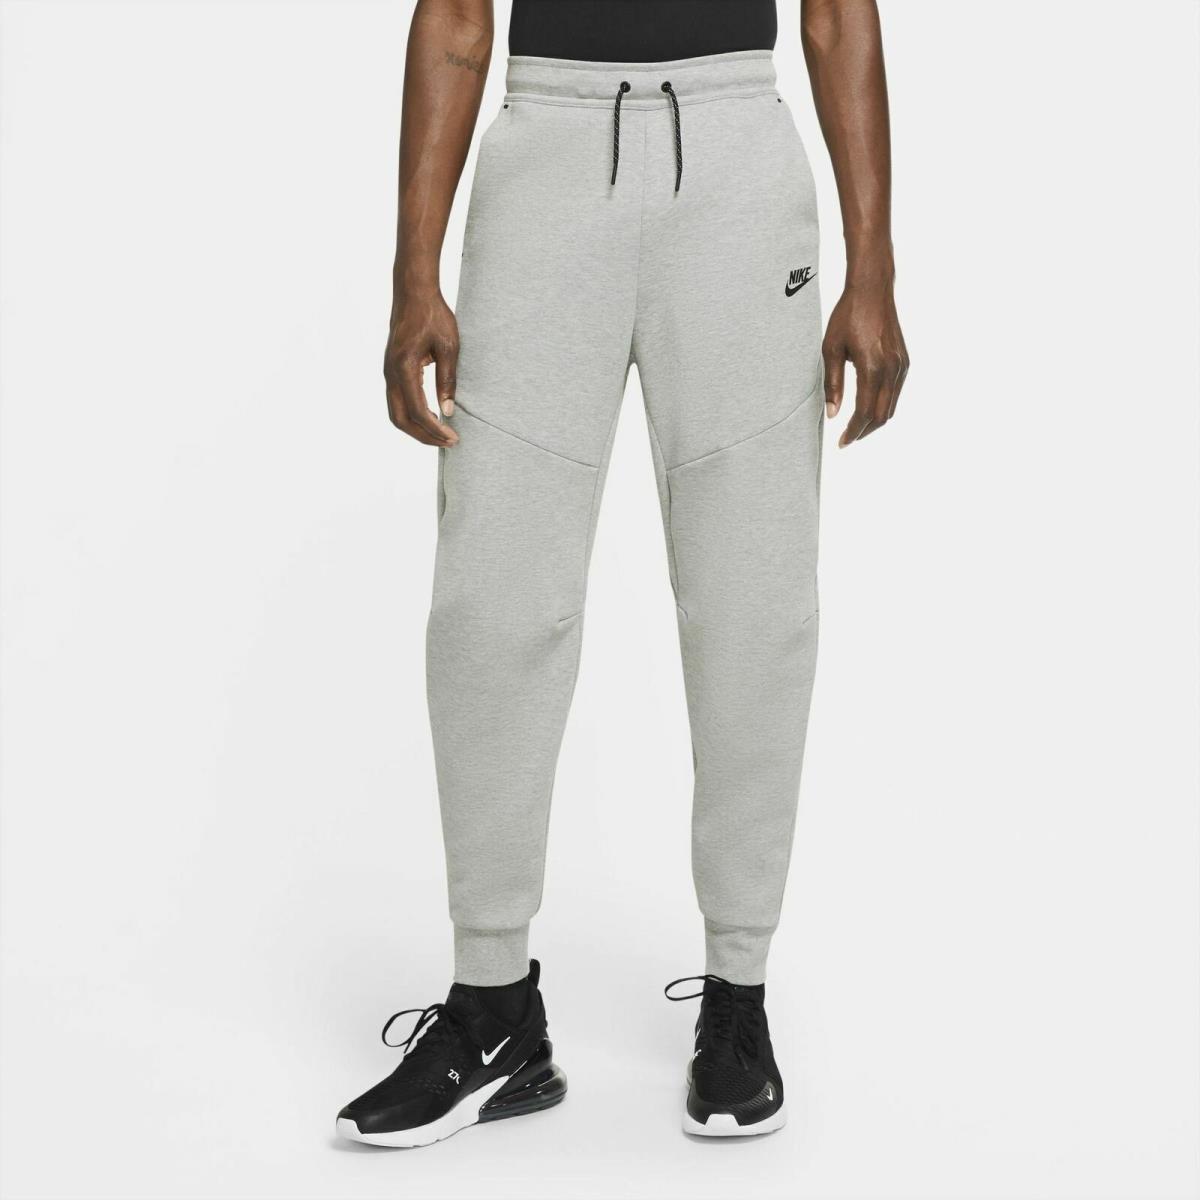 CU4495-063 Mens Nike Sportswear Tech Fleece Jogger Pants Gray 3XL